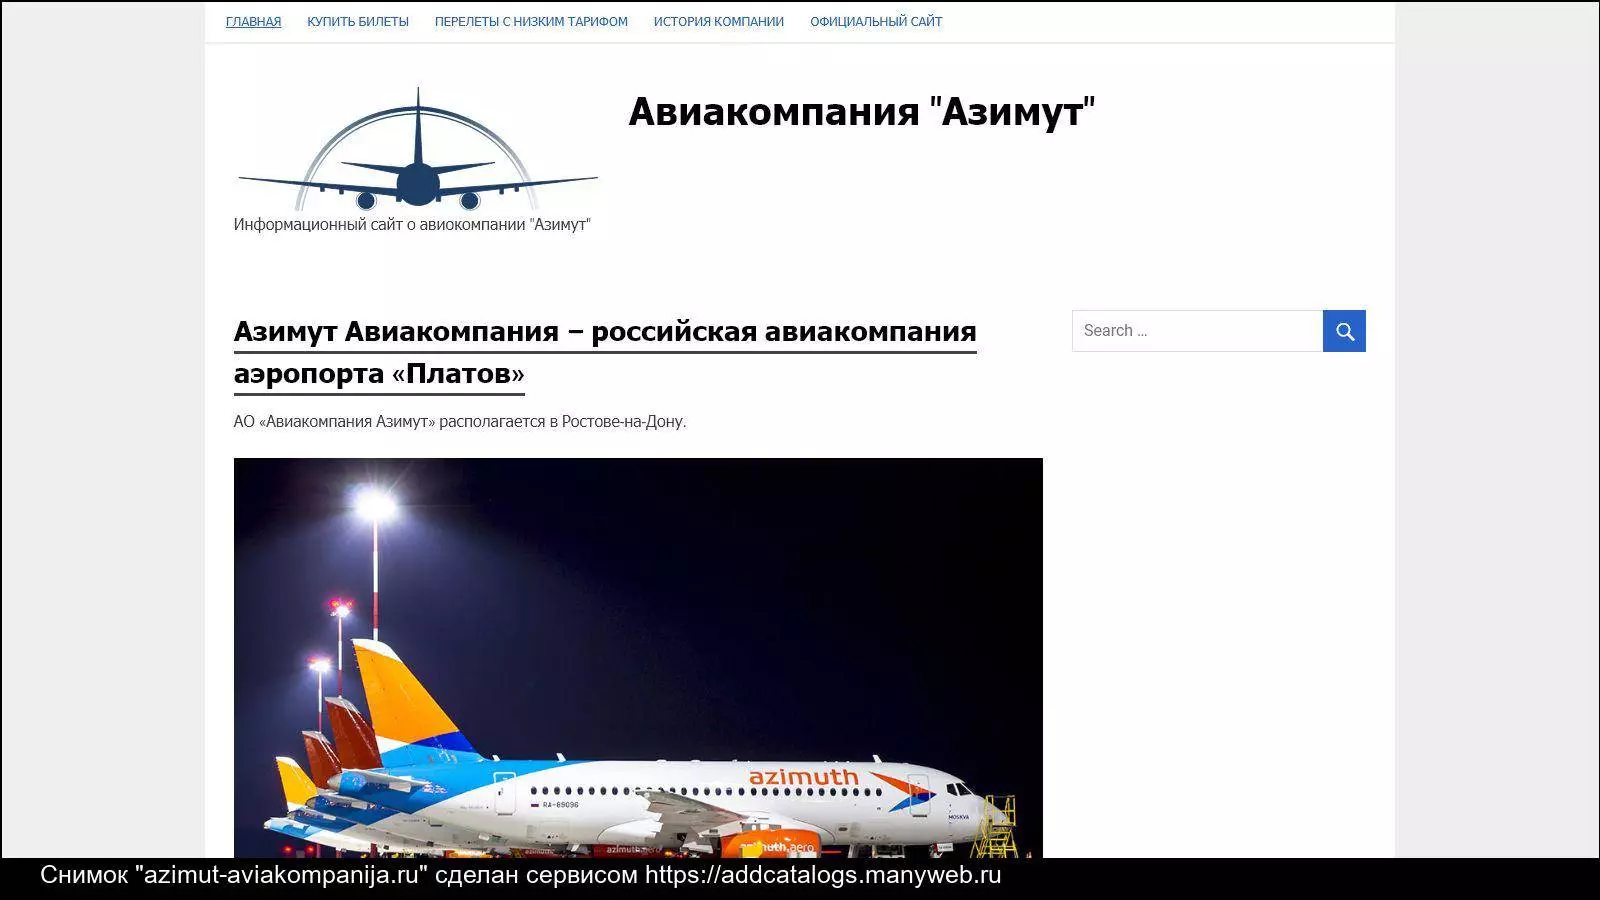 Авиакомпания азимут – официальный сайт